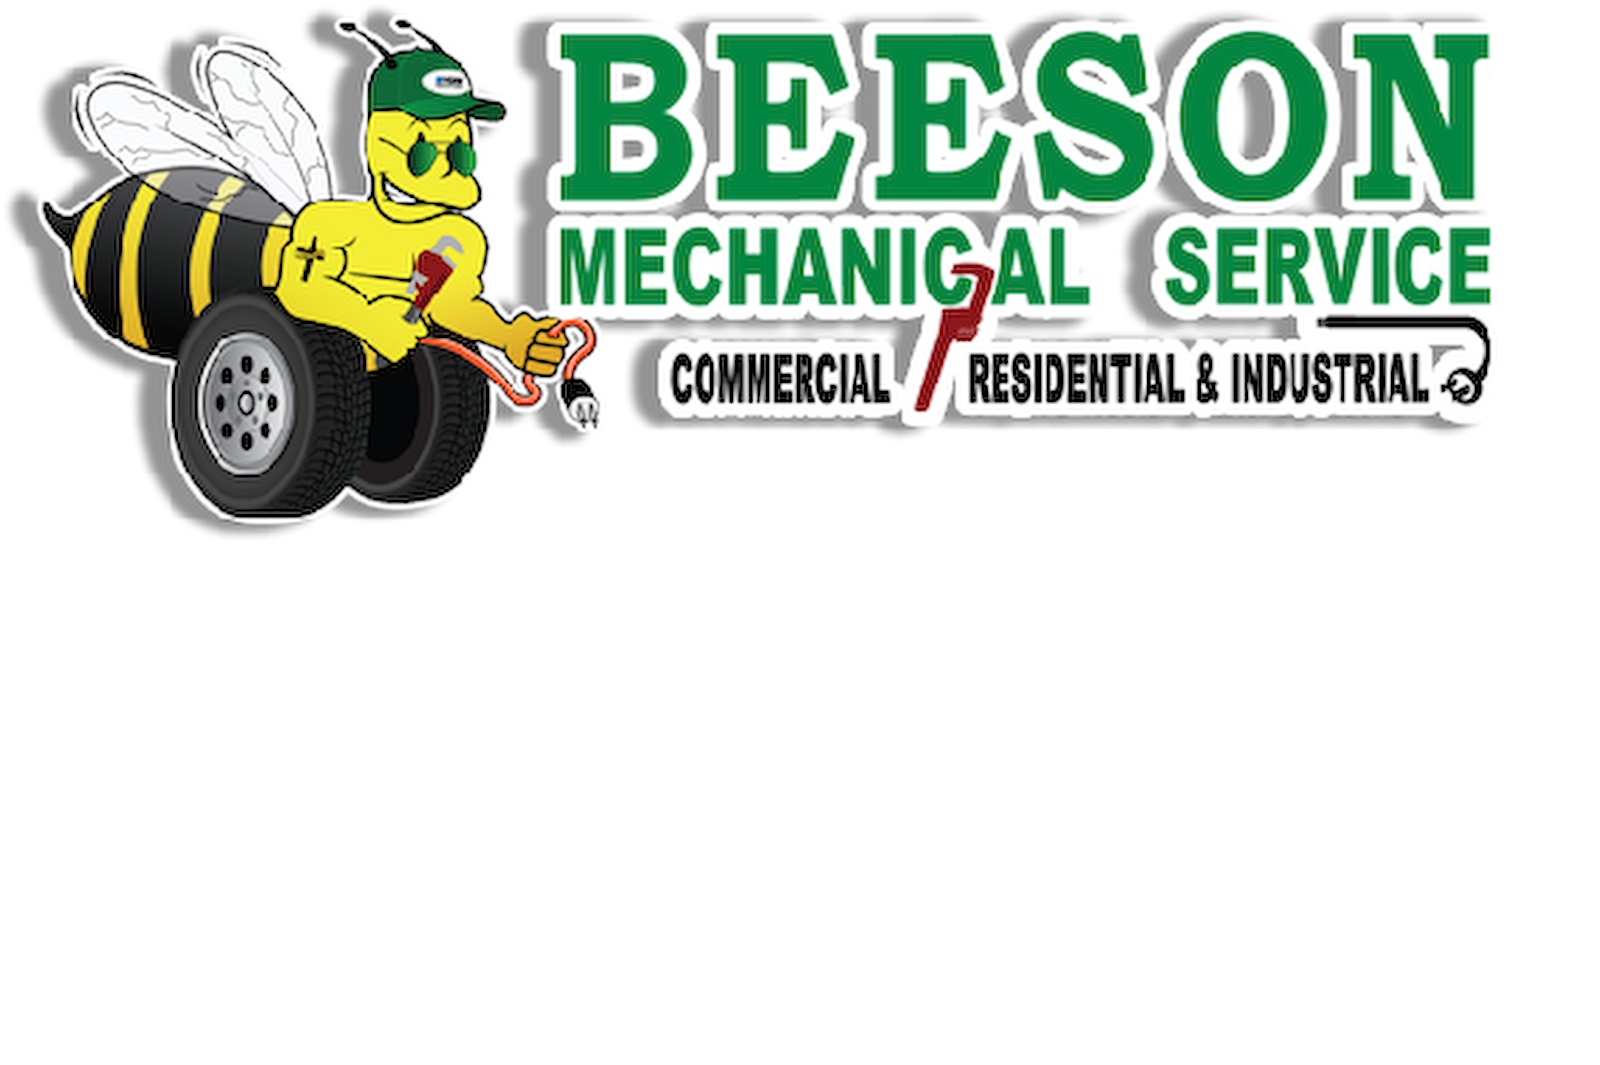 Beeson Mechanical 317-659-9508